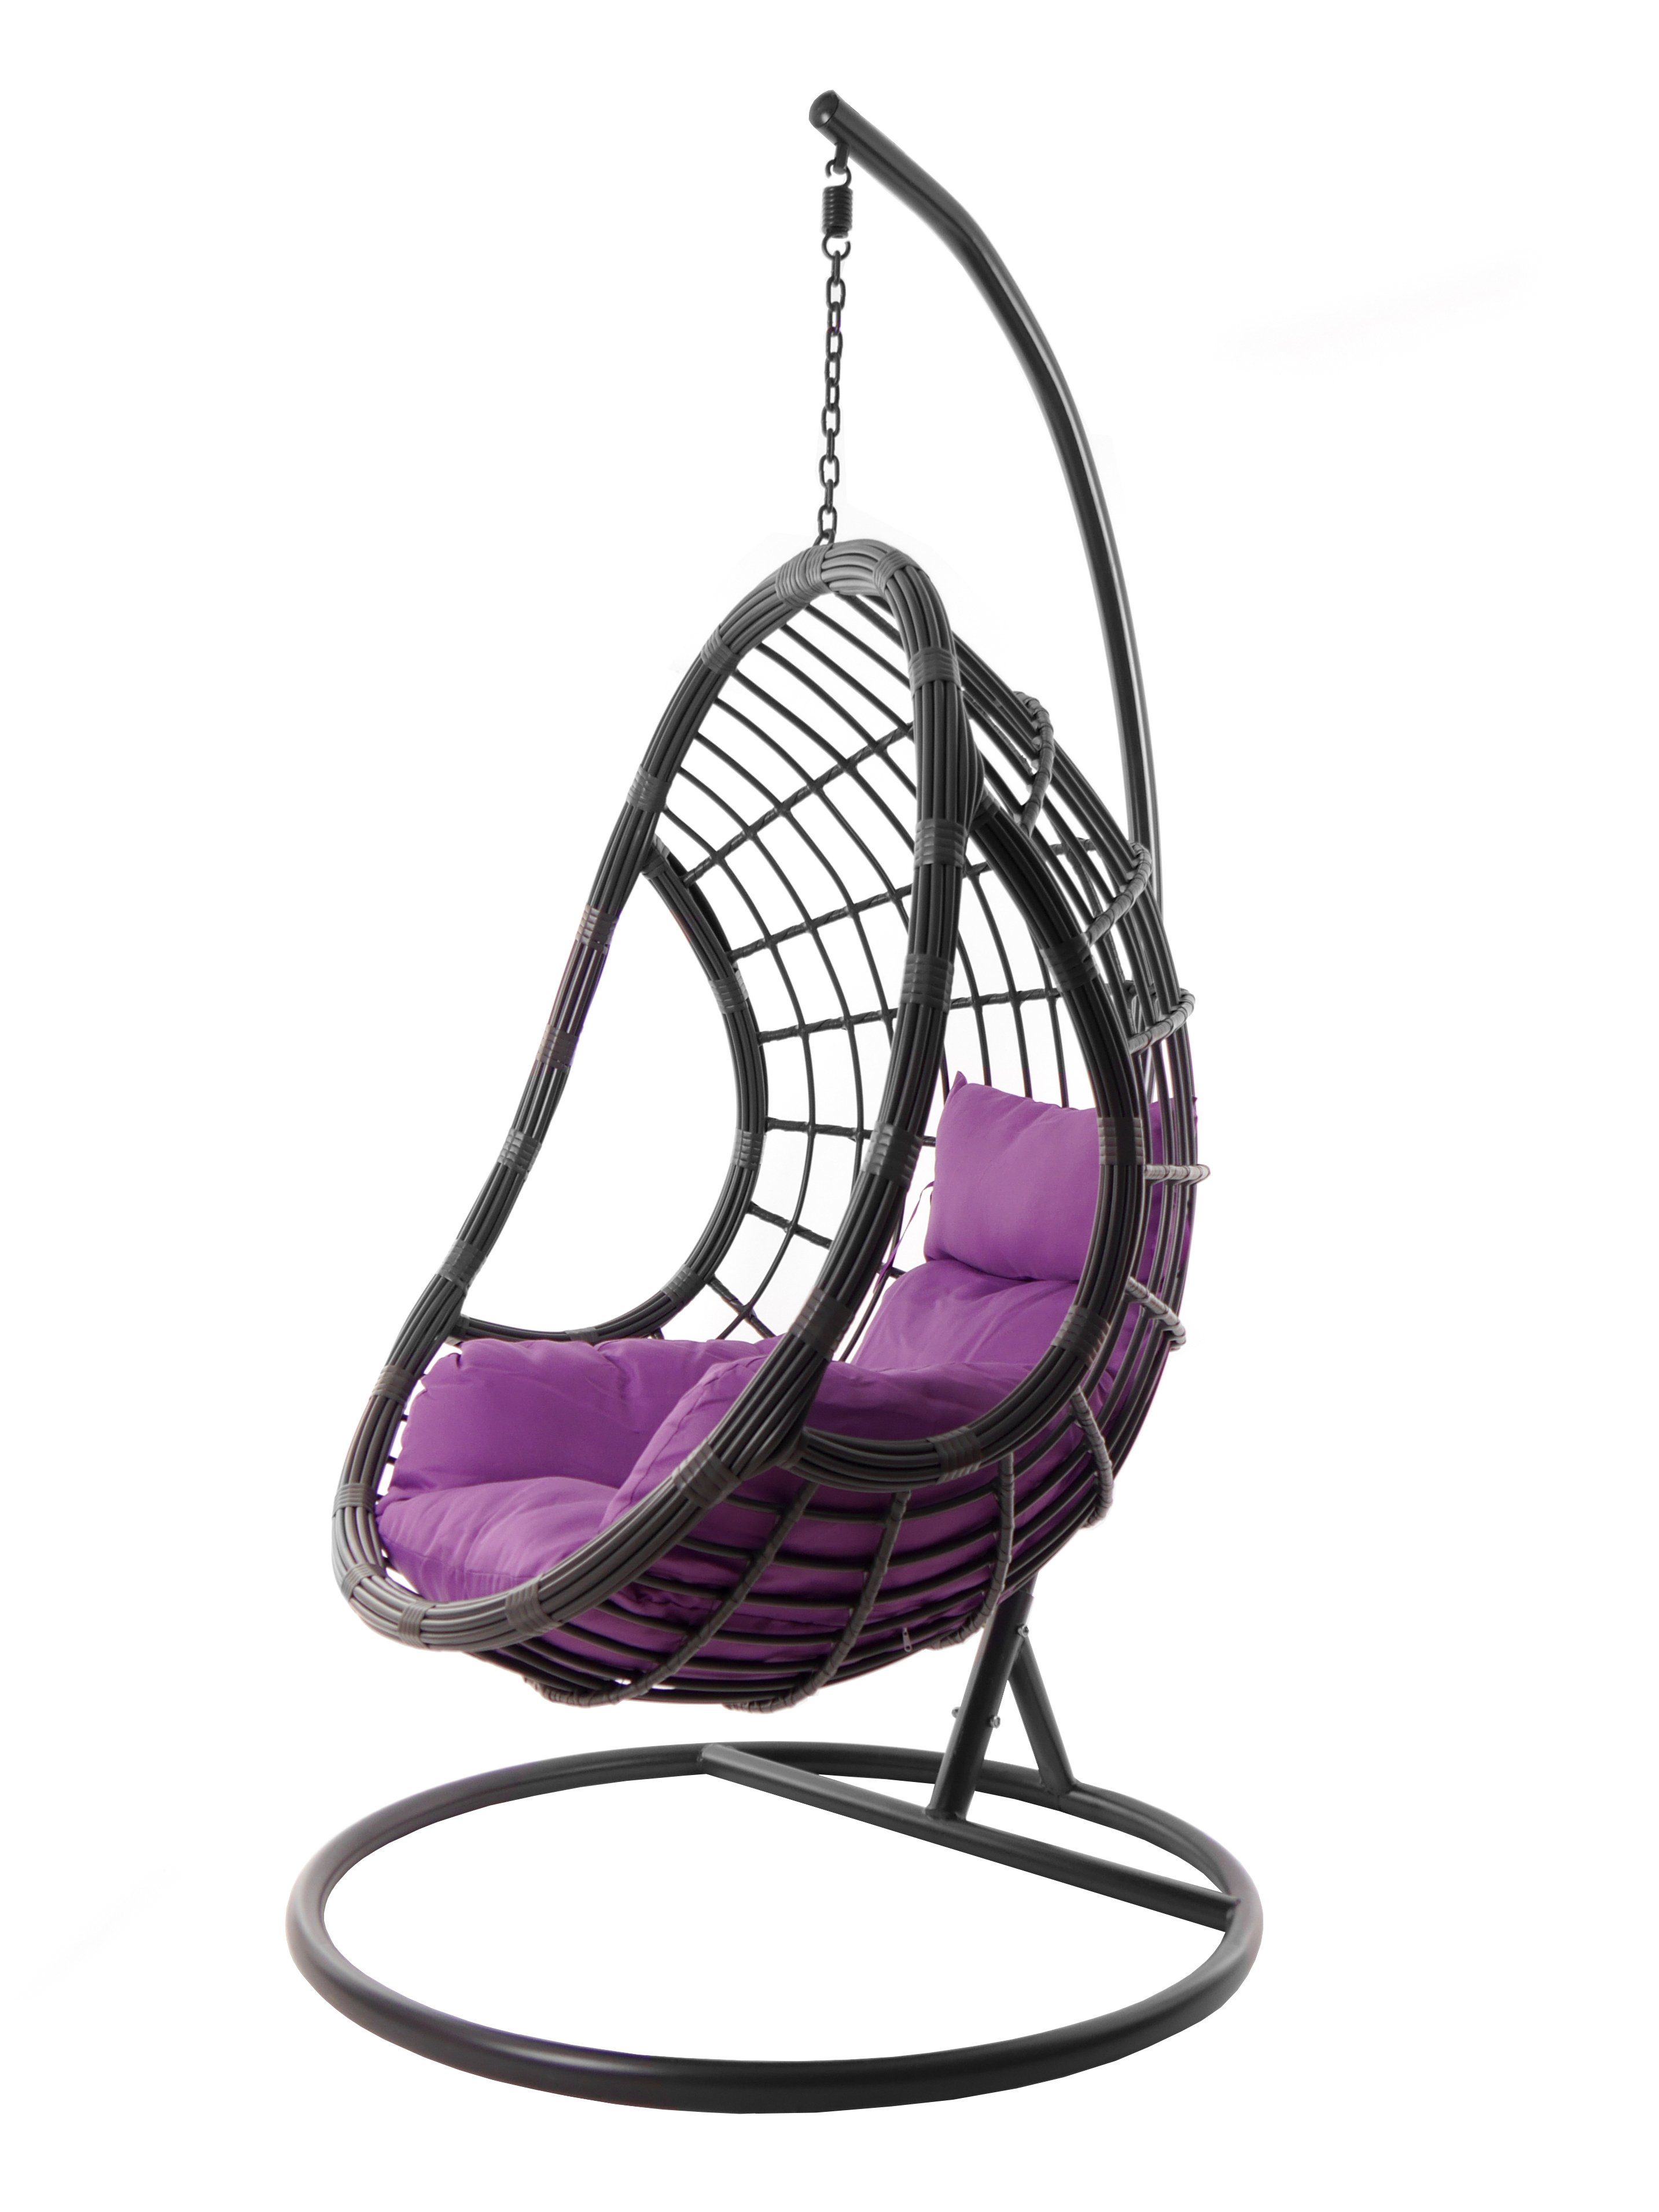 KIDEO Hängesessel Hängesessel PALMANOVA grau, Hängestuhl mit Gestell und Kissen, moderne Loungemöbel in grau, farbige Nest-Kissen lila (4050 violet)